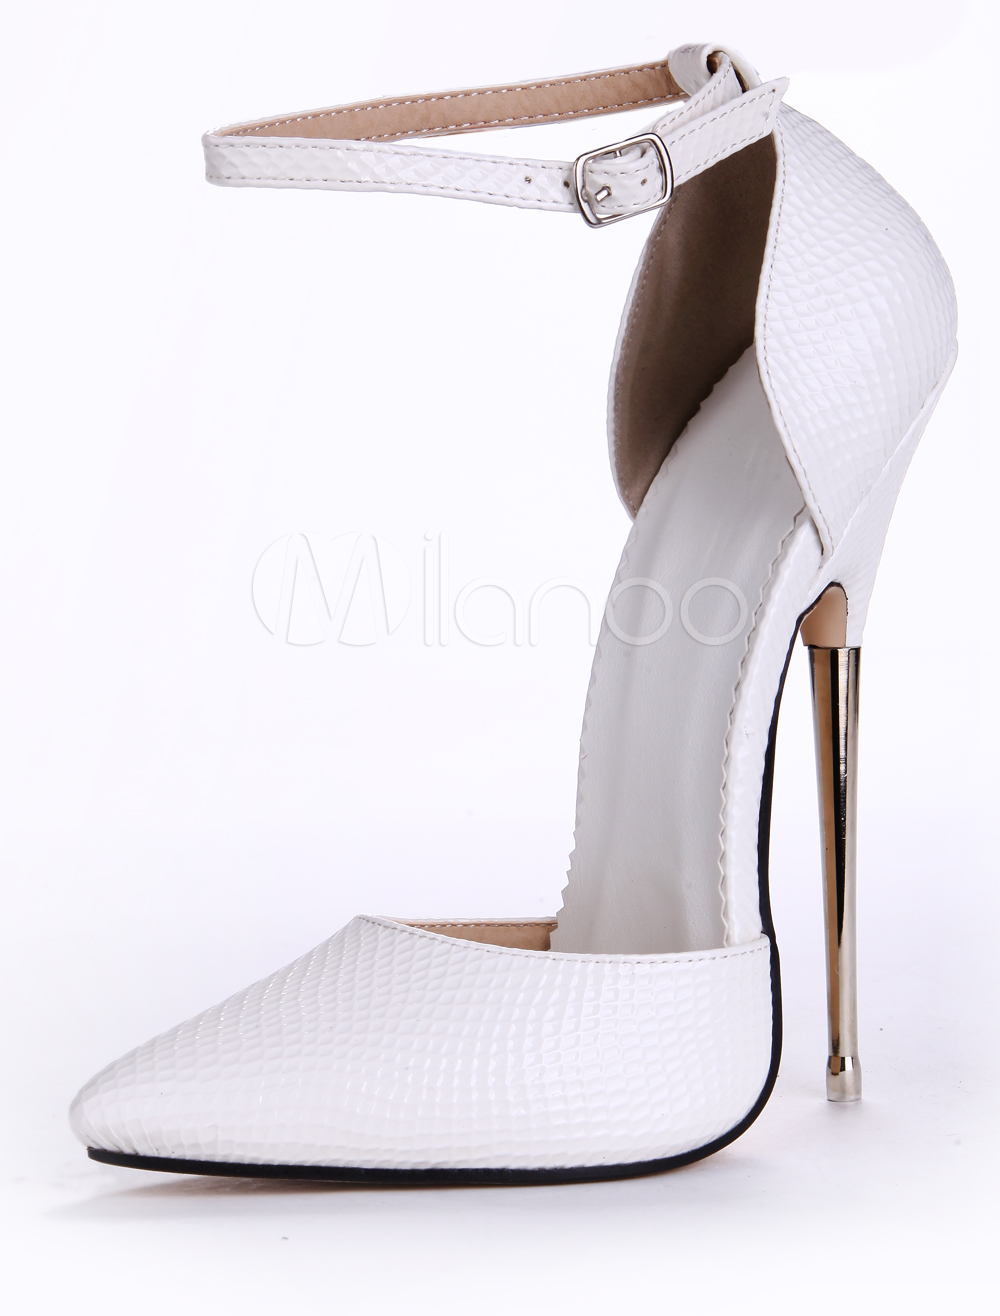 Shop amazing 6.3 inch metal heeled 